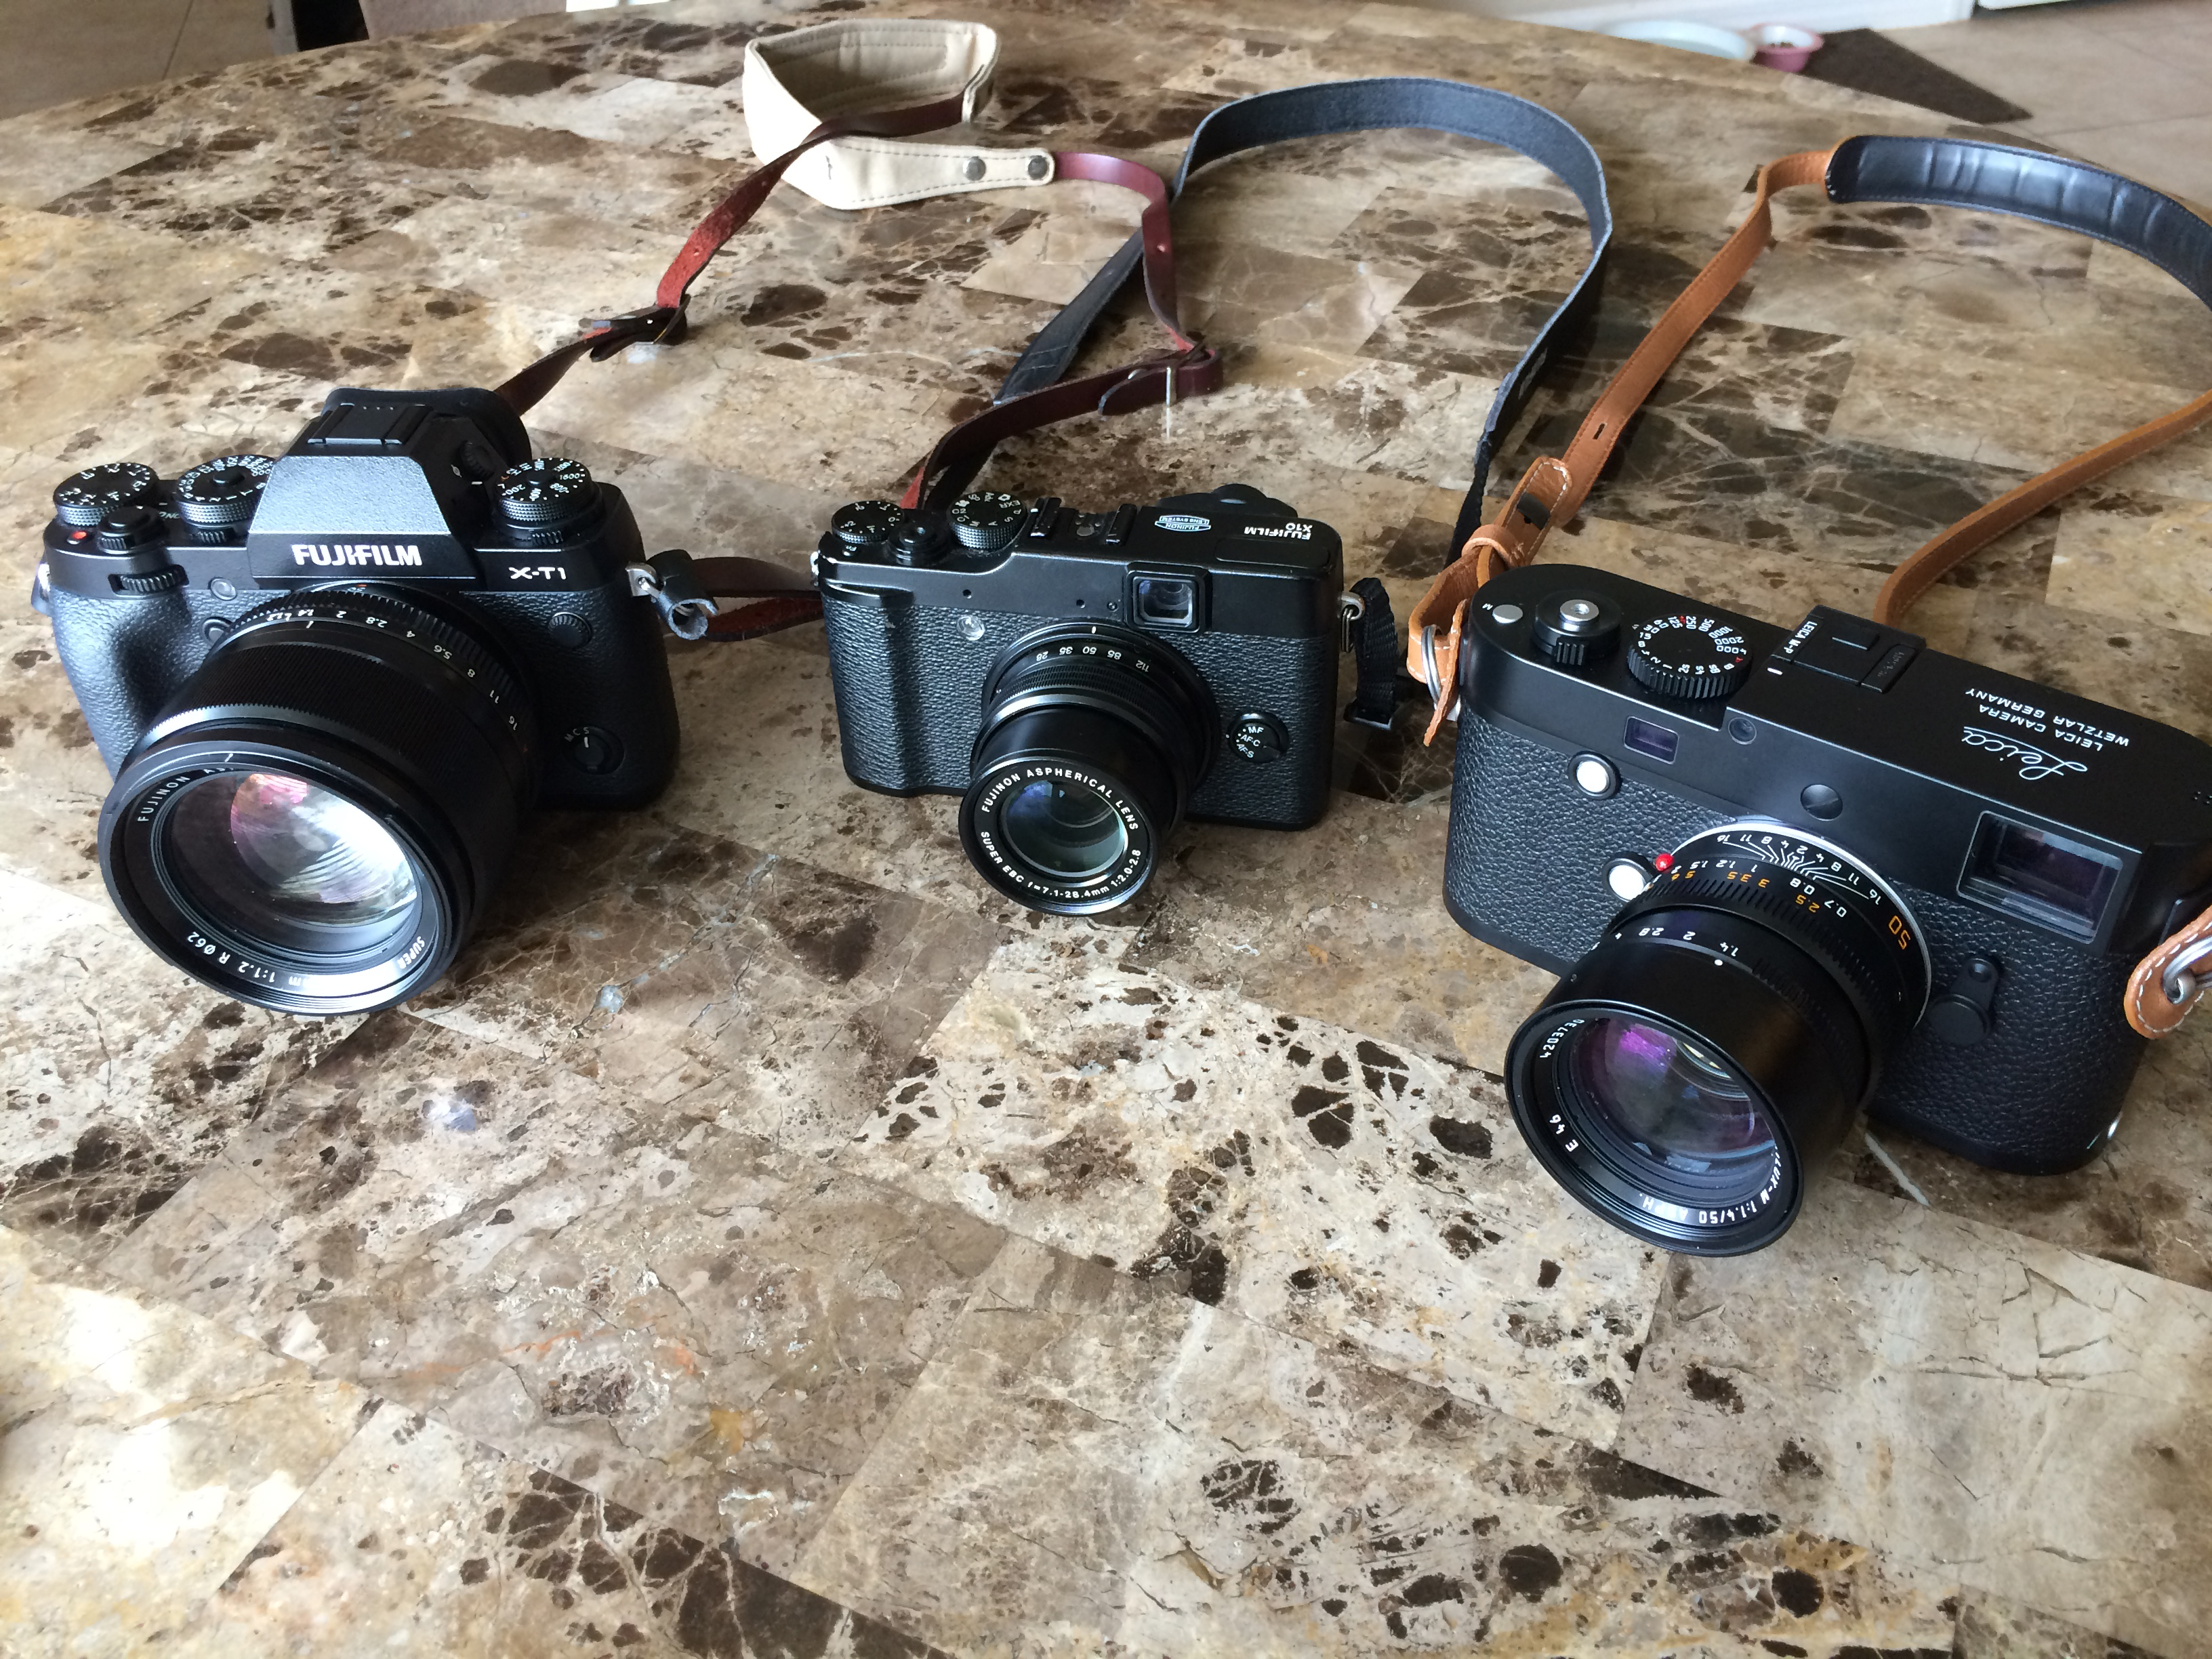 L to R: Fujifilm X-T1 / 56mm f1.2, Fujifilm X10 / 28-112mm f2.0-2.4, Leica M-P / Summilux 50mm ASPH.